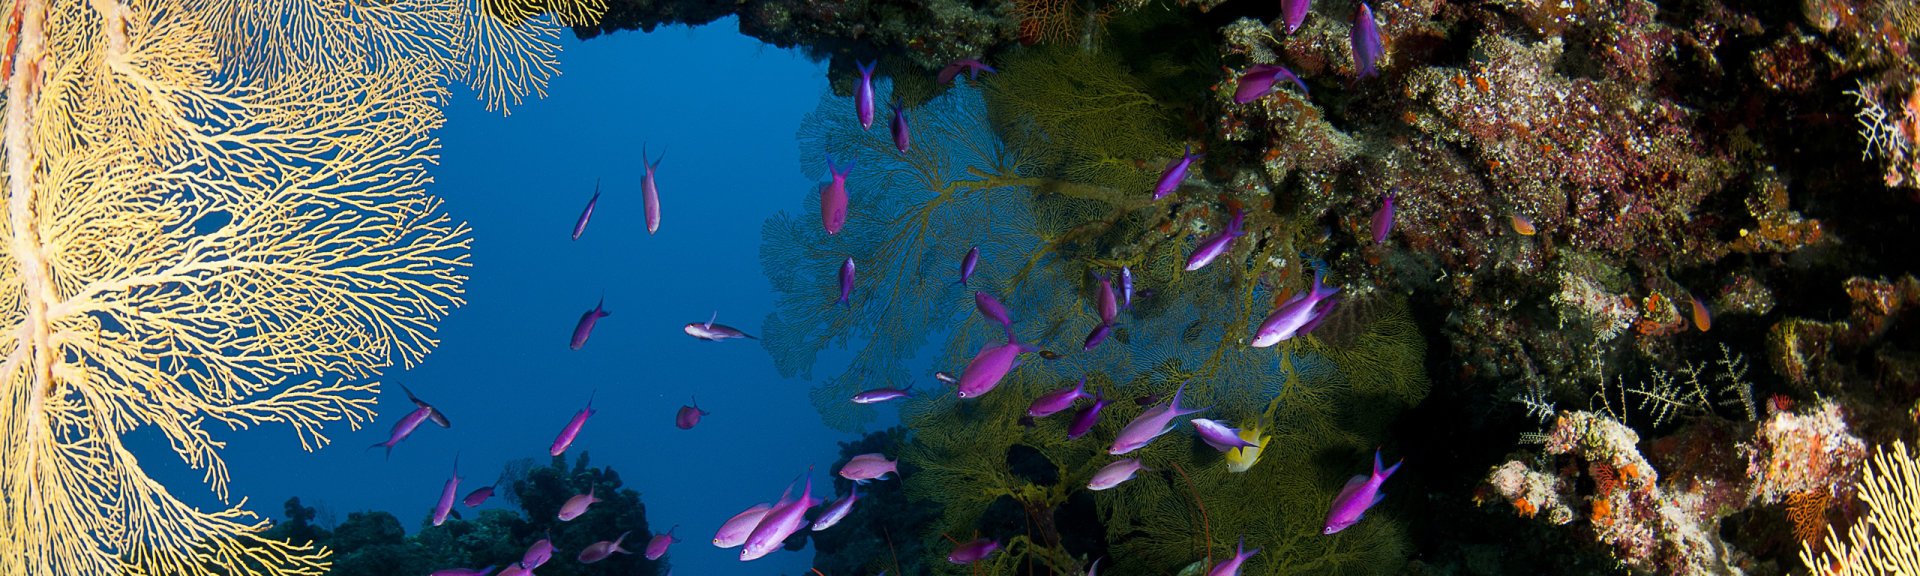 Colourful coral garden. Photographer: Allyazza.